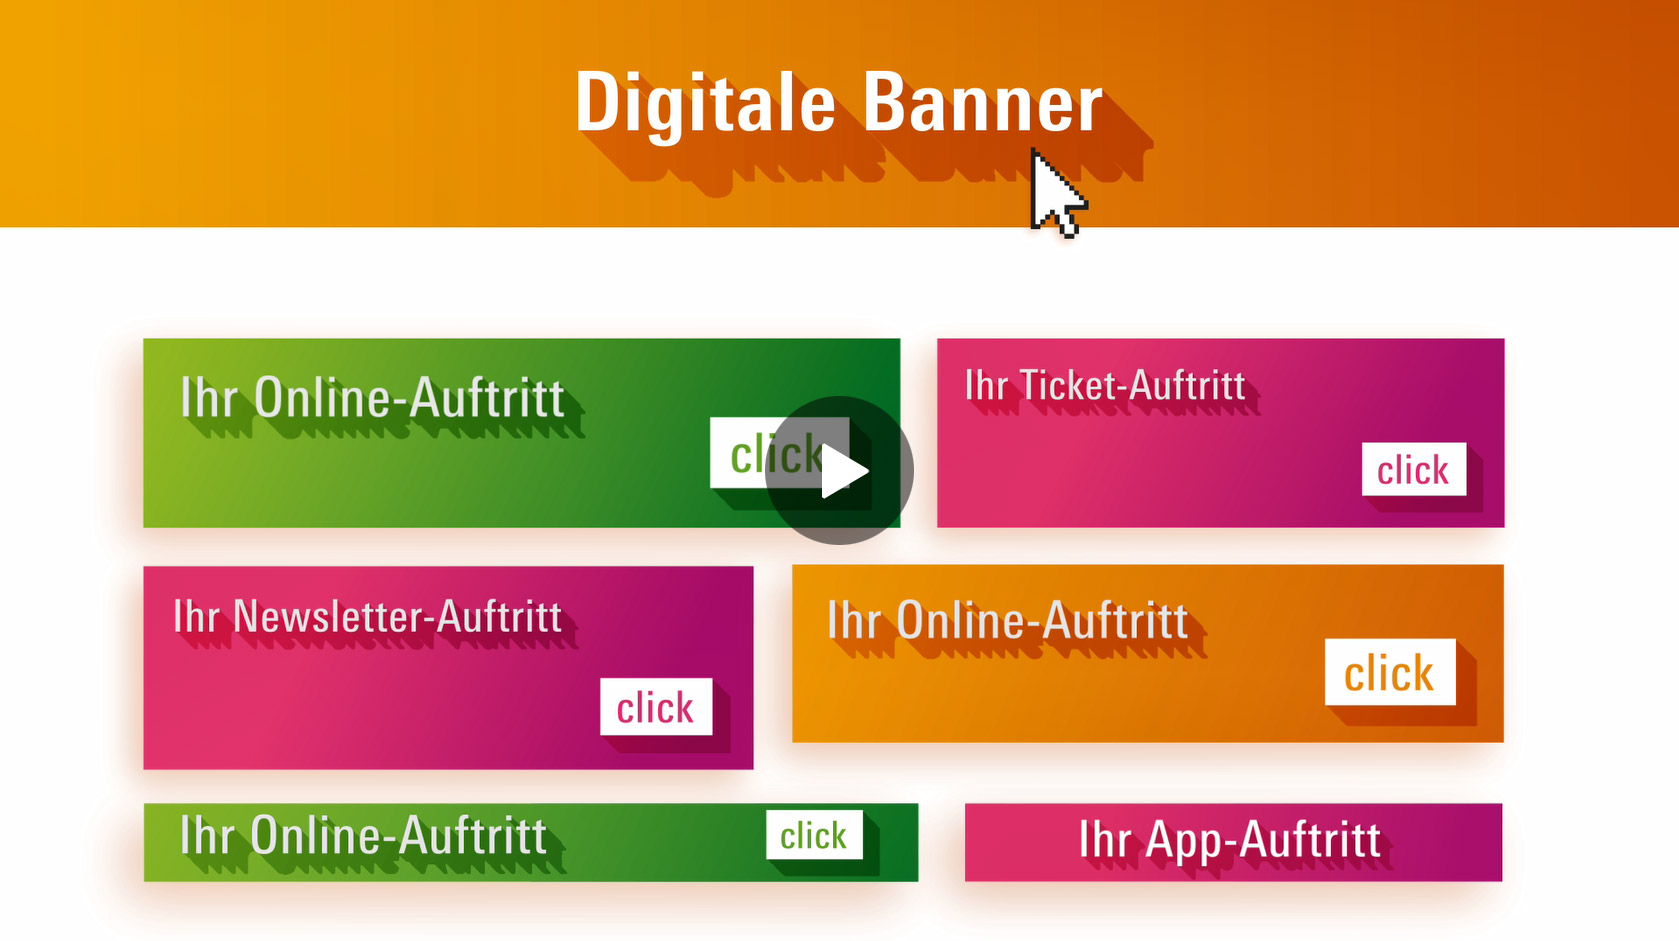 Digital Banner at Messe Frankfurt websites and apps